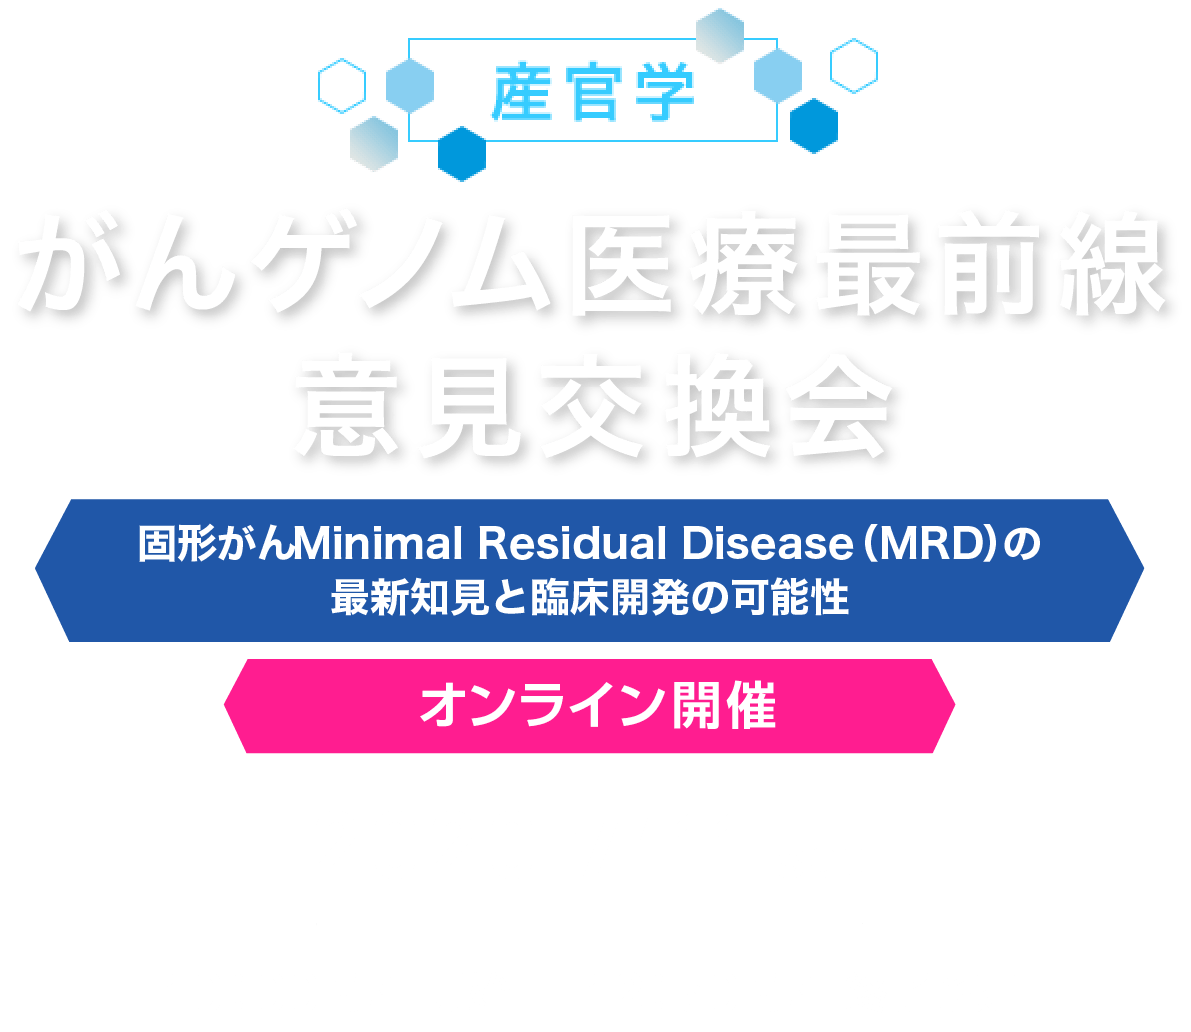 産官学 がんゲノム医療最前線意見交換会 固形がんMinimal Residual Disease（MRD）の最新知見と臨床開発の可能性 オンライン開催 2020/7/11(sat)